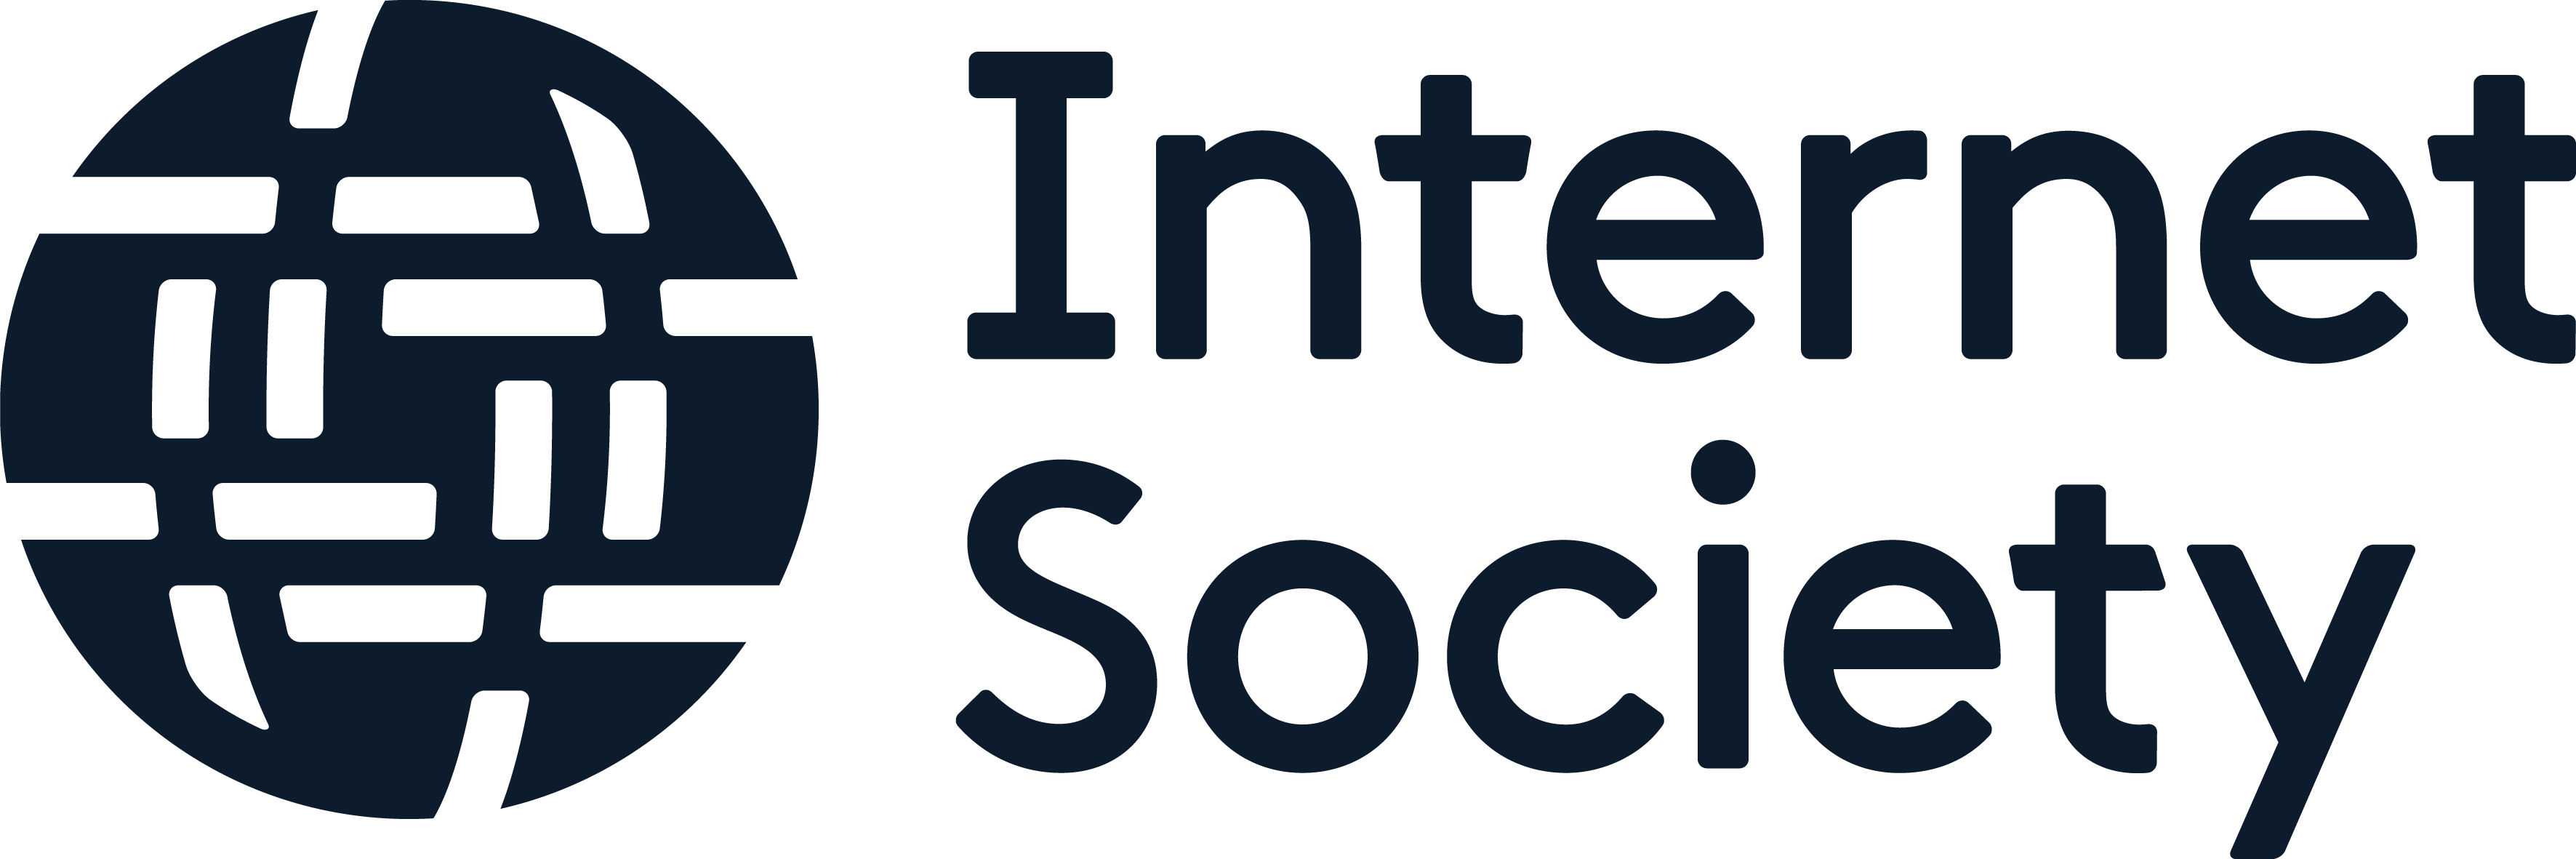 Internet Society